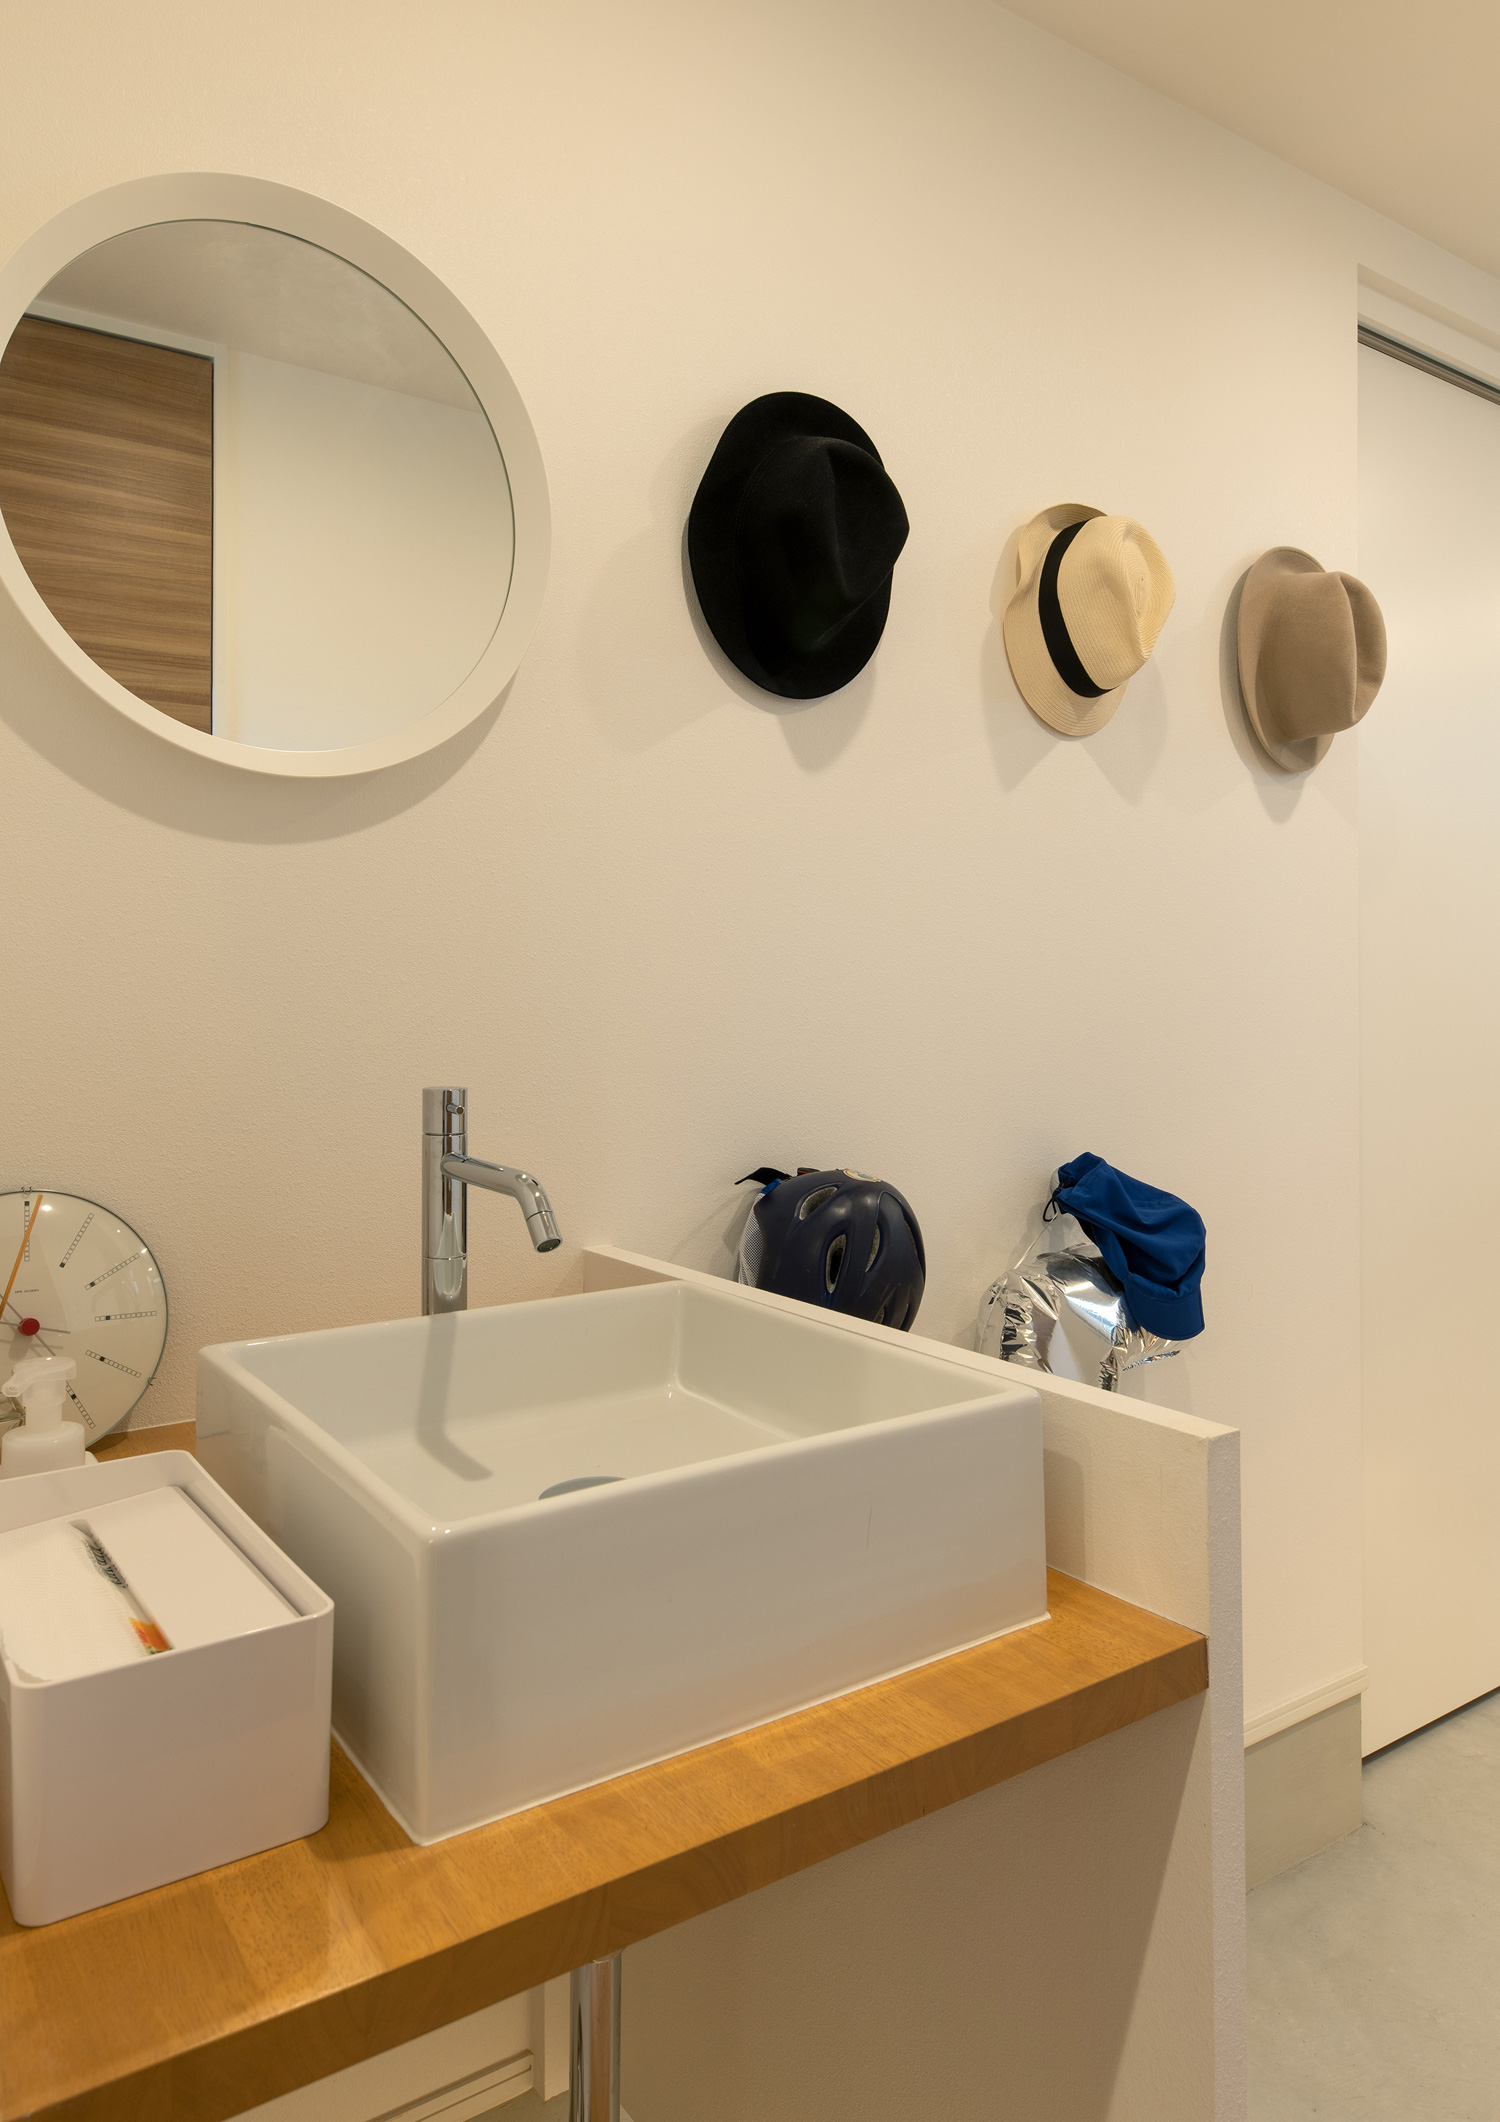 丸い鏡のある手洗いカウンターのそばに帽子が飾られた壁がある様子・デザイン住宅